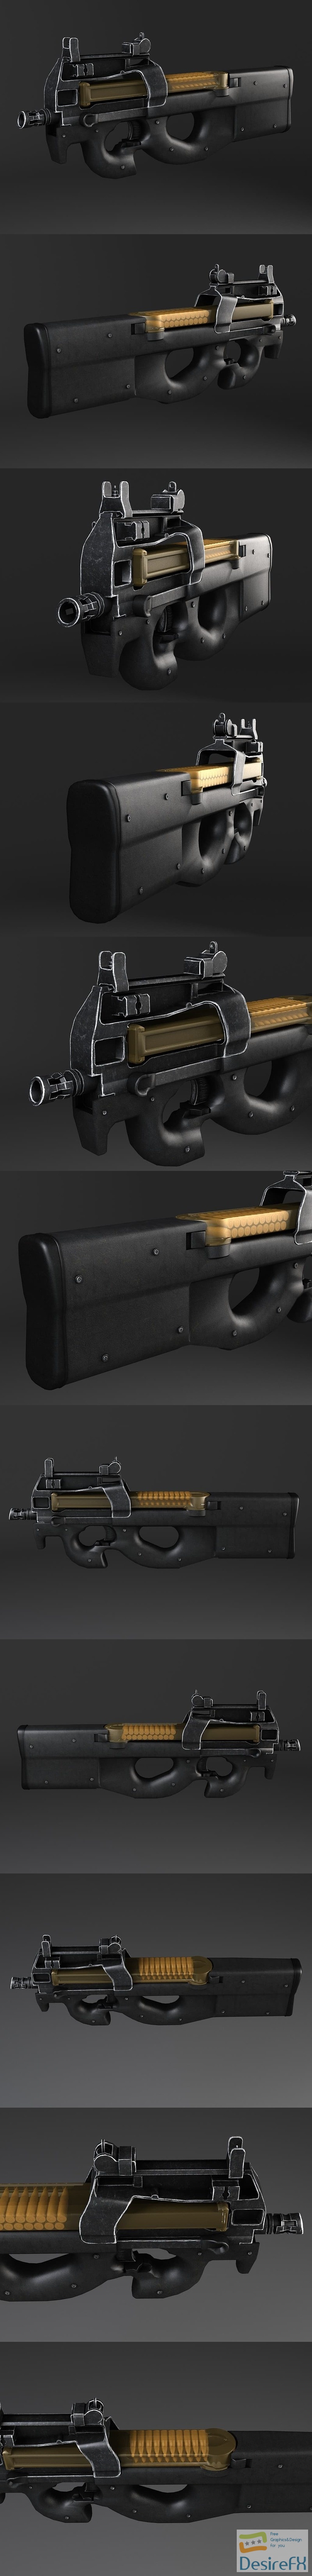 FN P90 Submachine Gun 3D Model